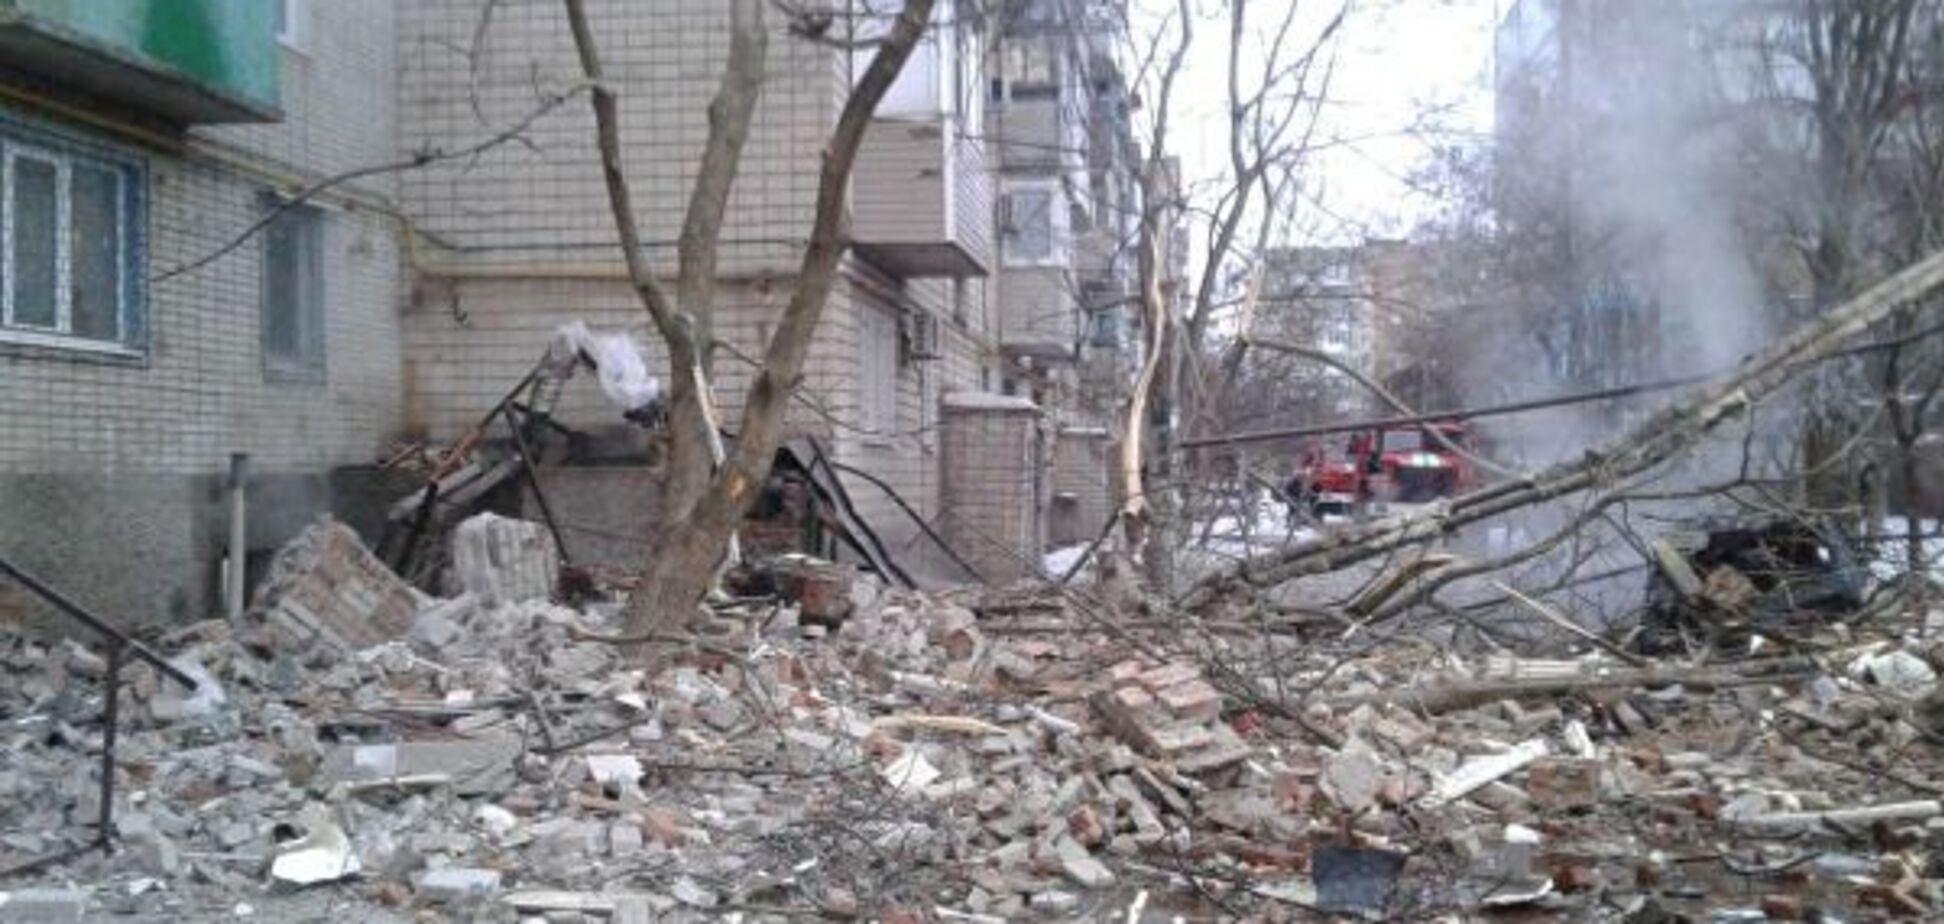  Есть угроза обрушения дома: спасатели объявили режим ЧС в Шахтах